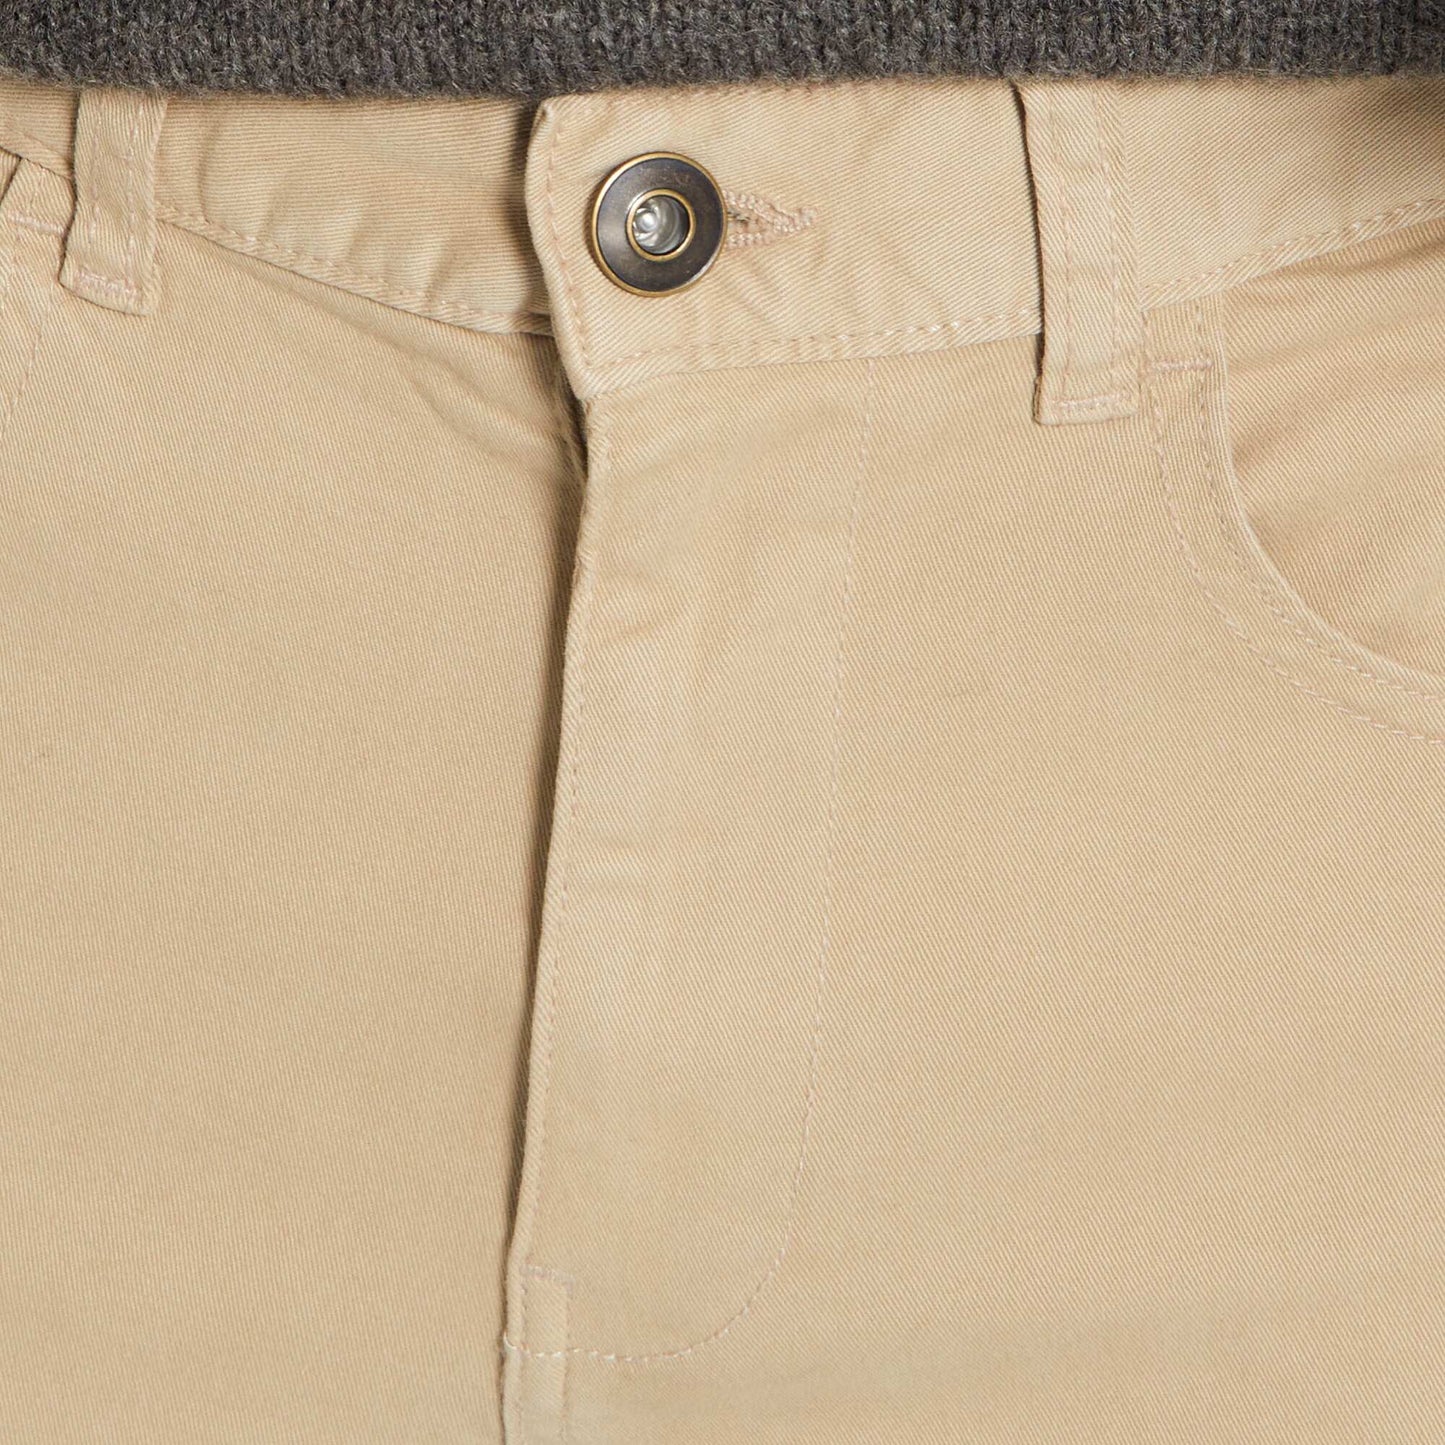 Pantalon slim 5 poches - L32 beige